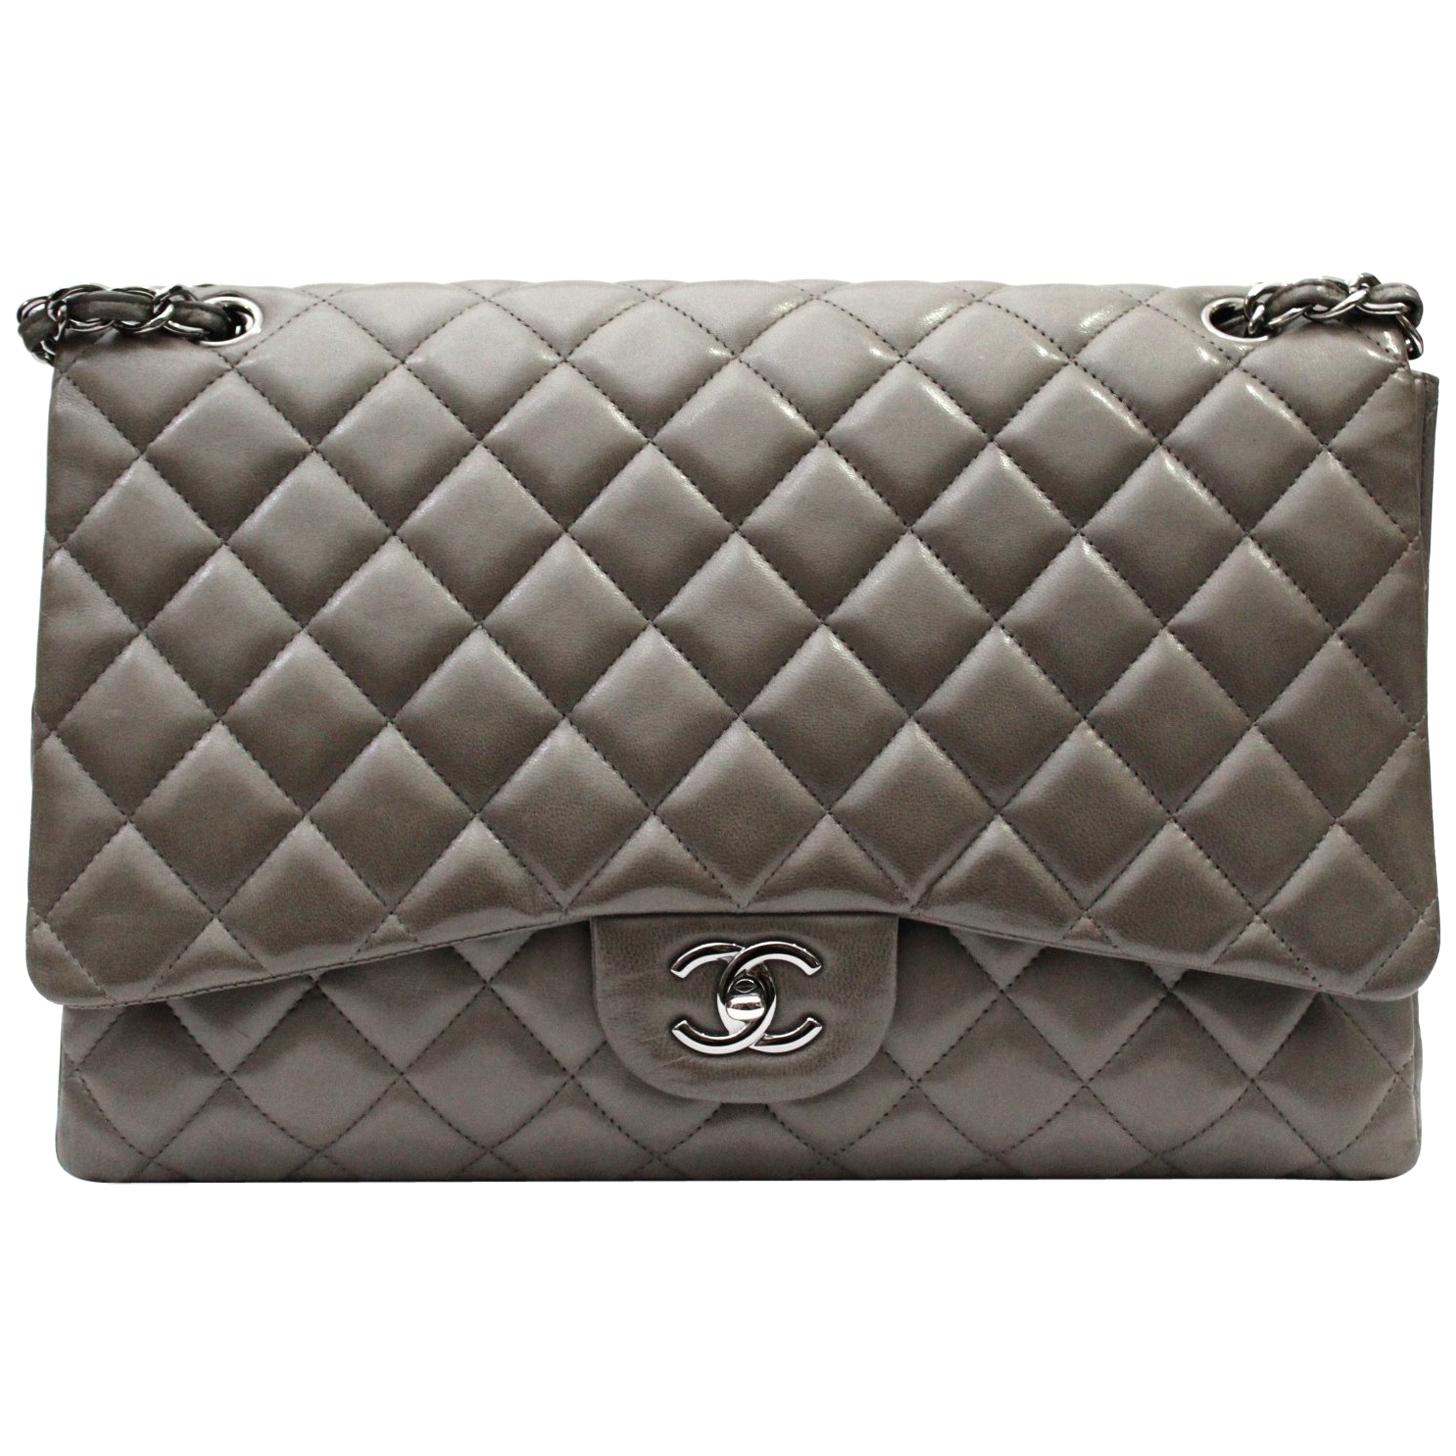 2009/2010 Chanel Gry Leather Maxi Jumbo Bag